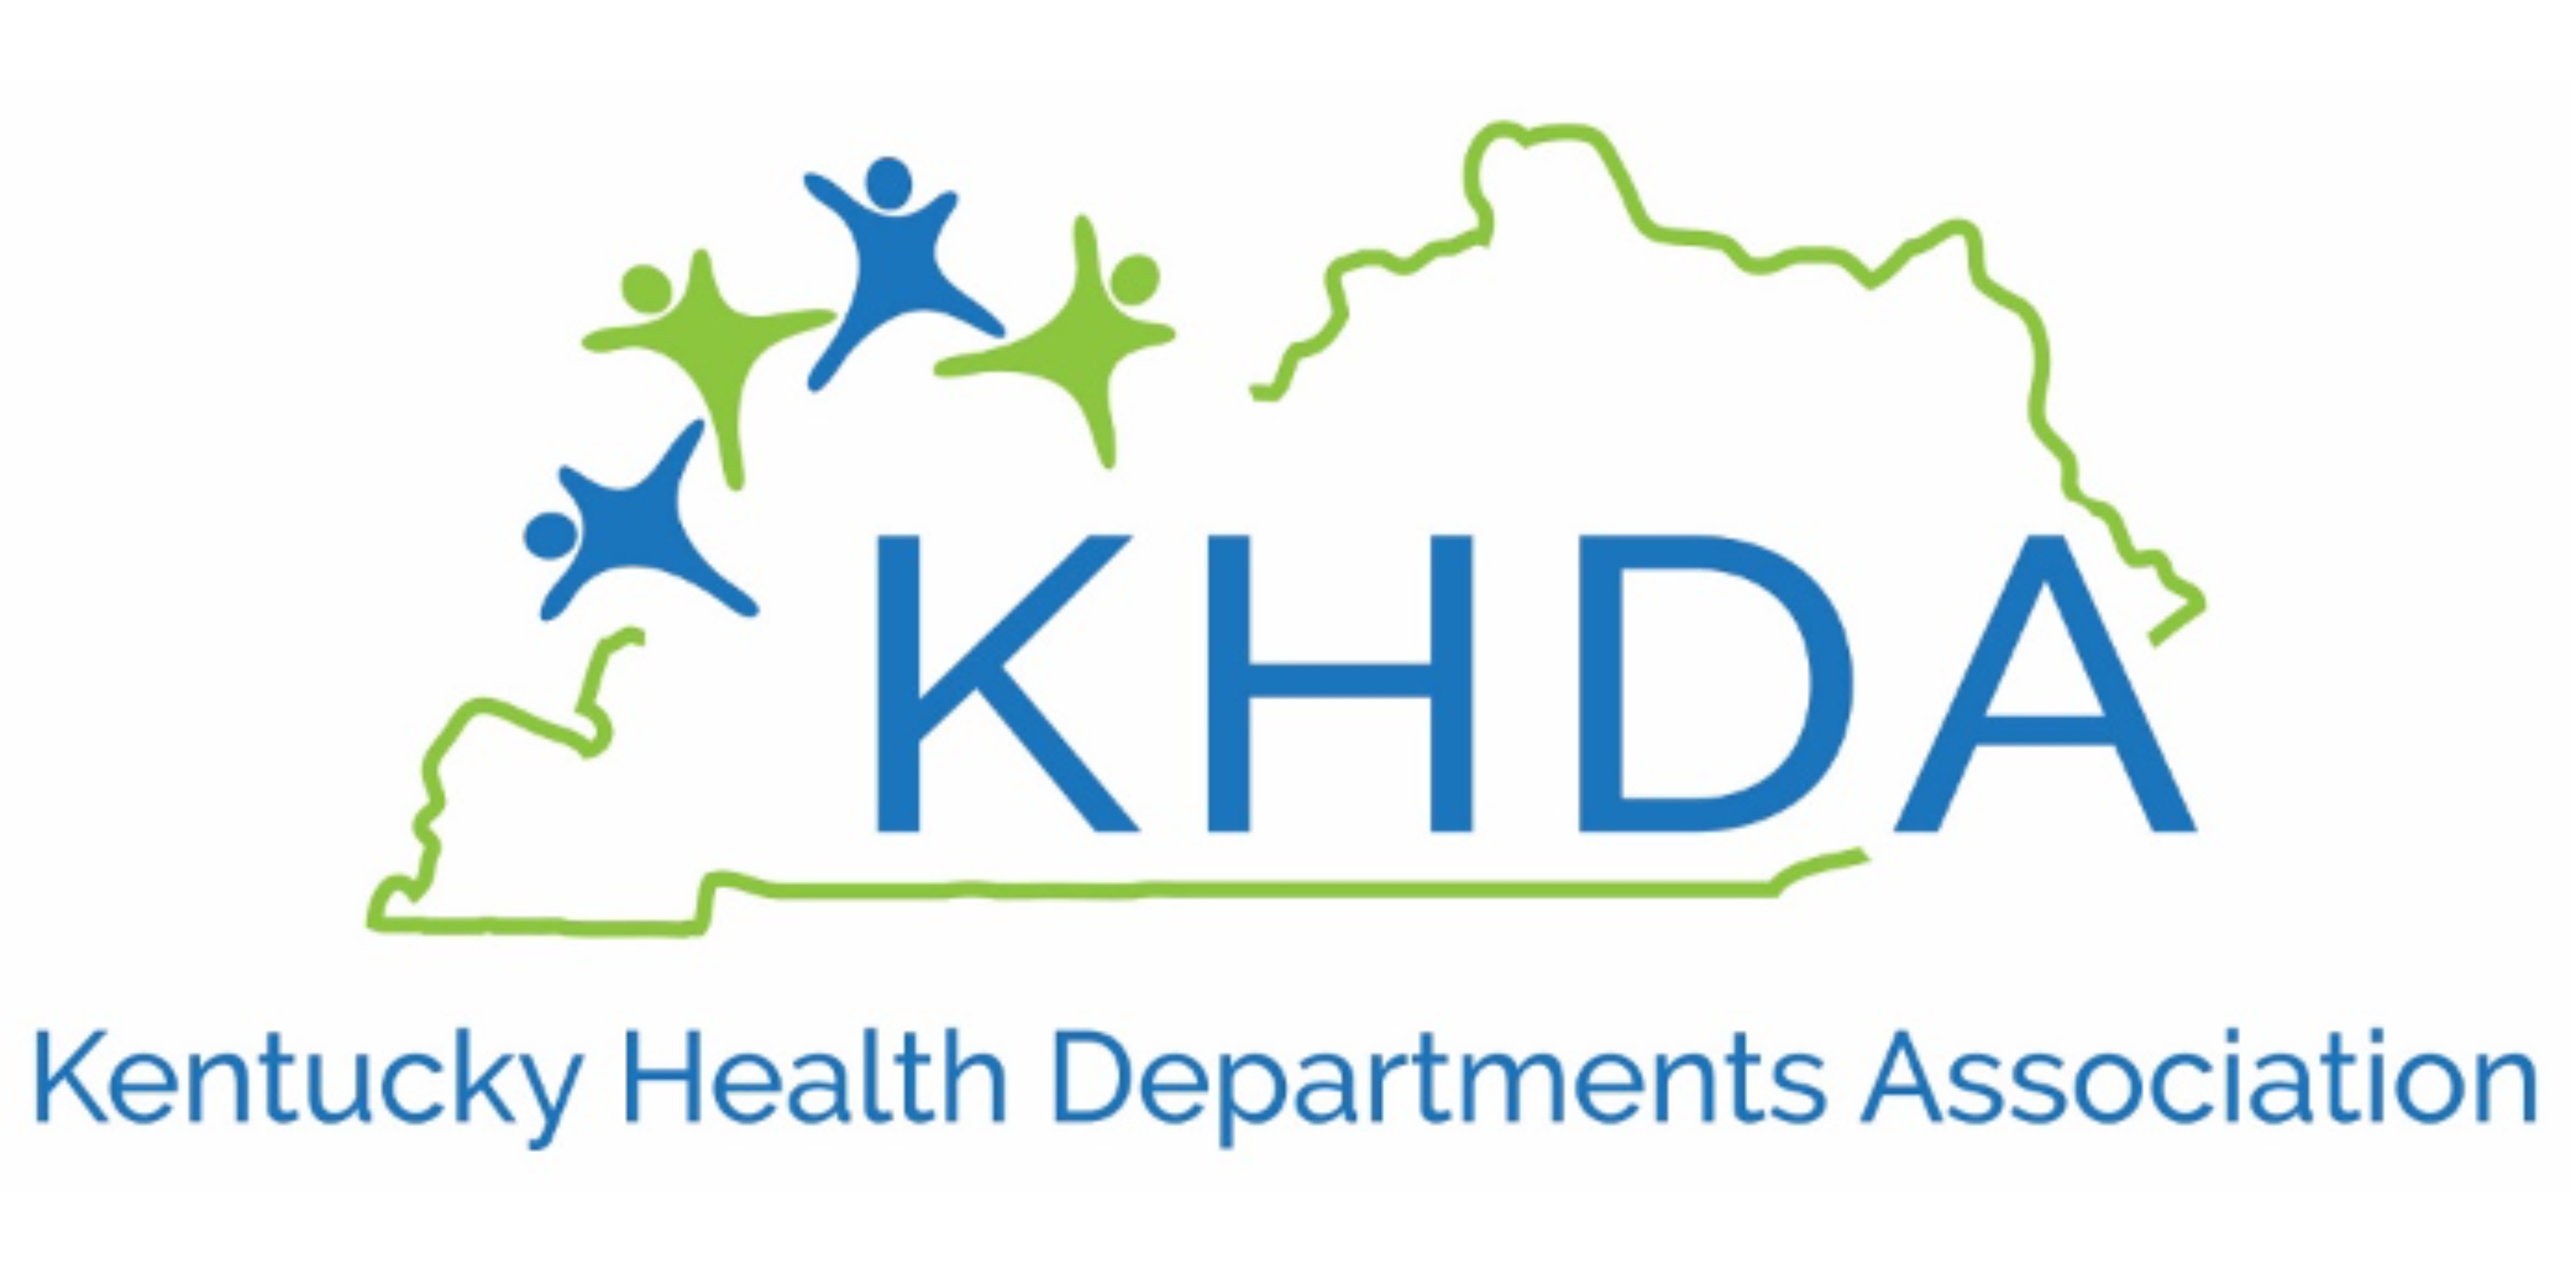 Kentucky Health Departments Association